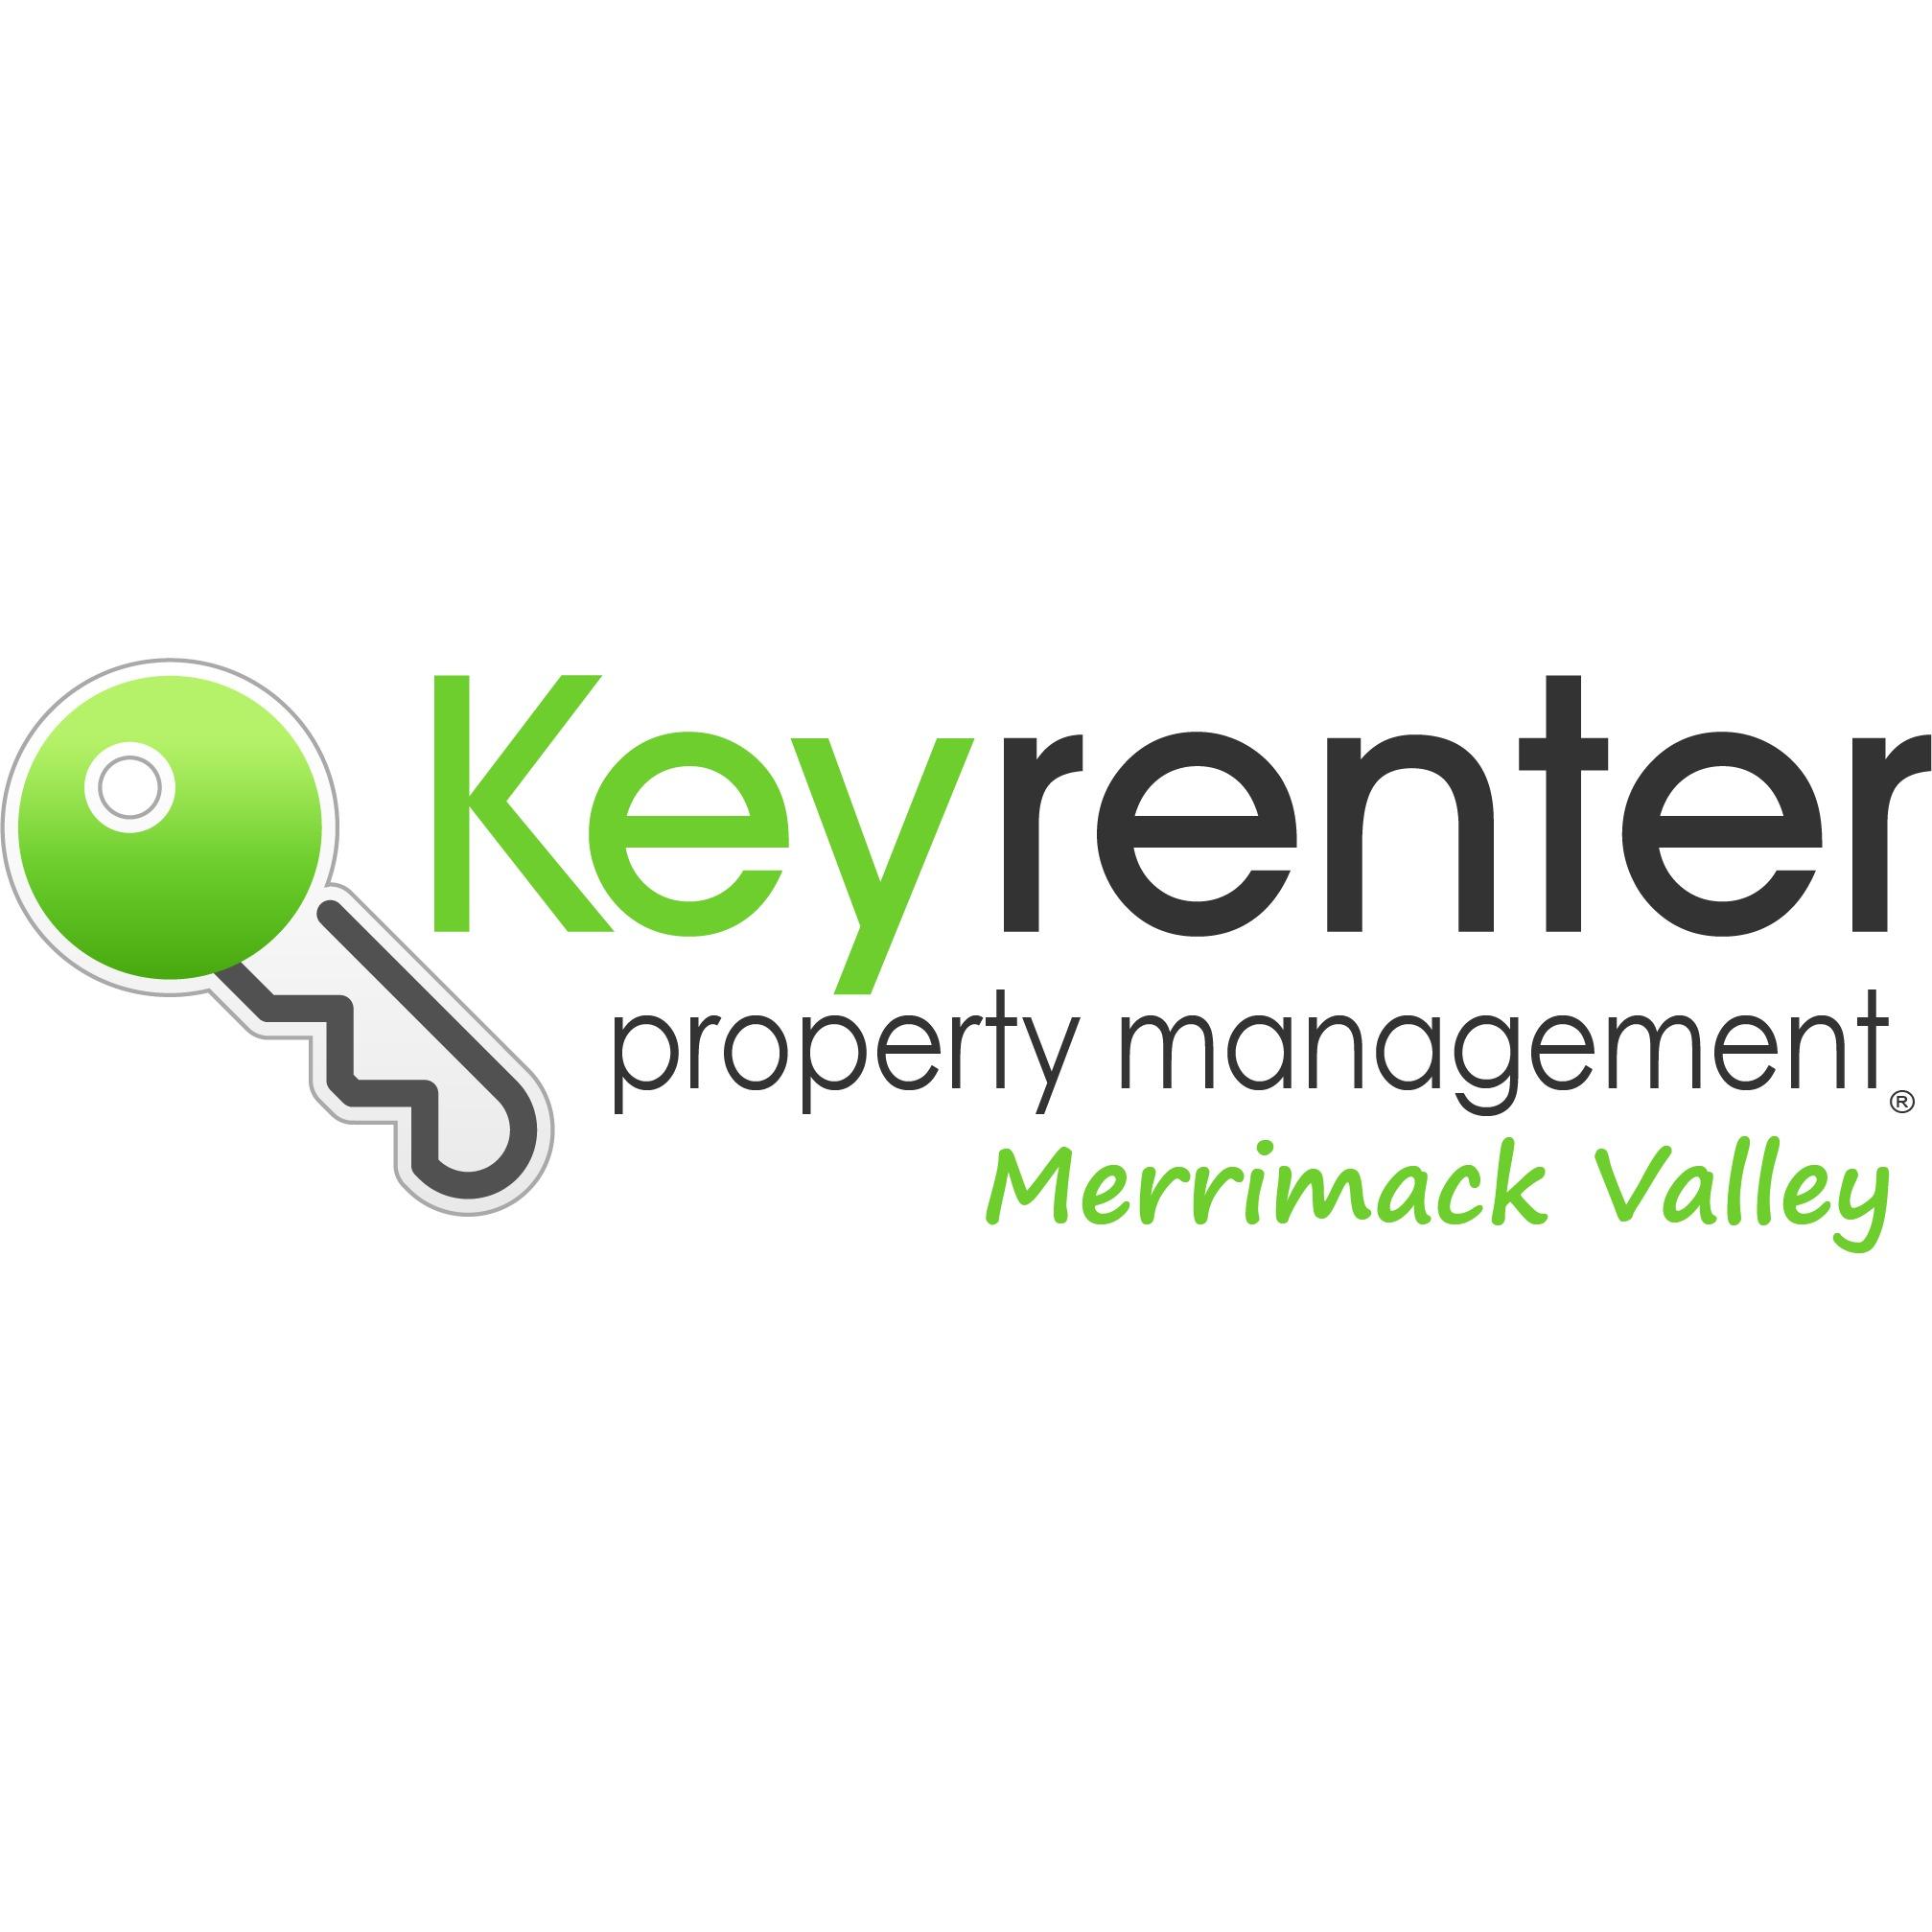 Keyrenter Property Management Merrimack Valley Logo